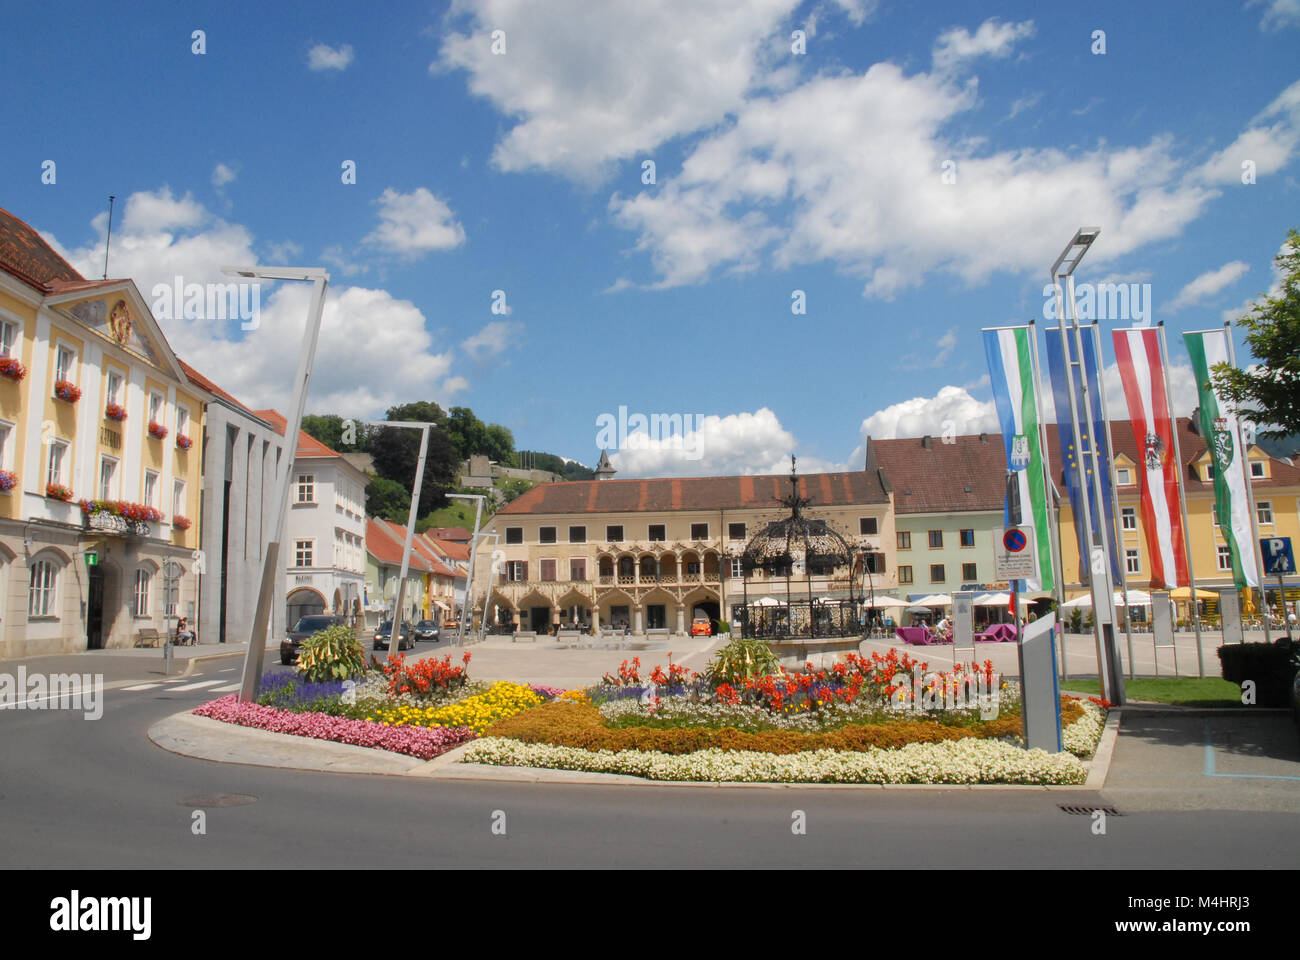 Bruck an der Mur, Austria - 19 luglio 2016 City Square, Eiserner Brunnen e Uhrturm in background Foto Stock